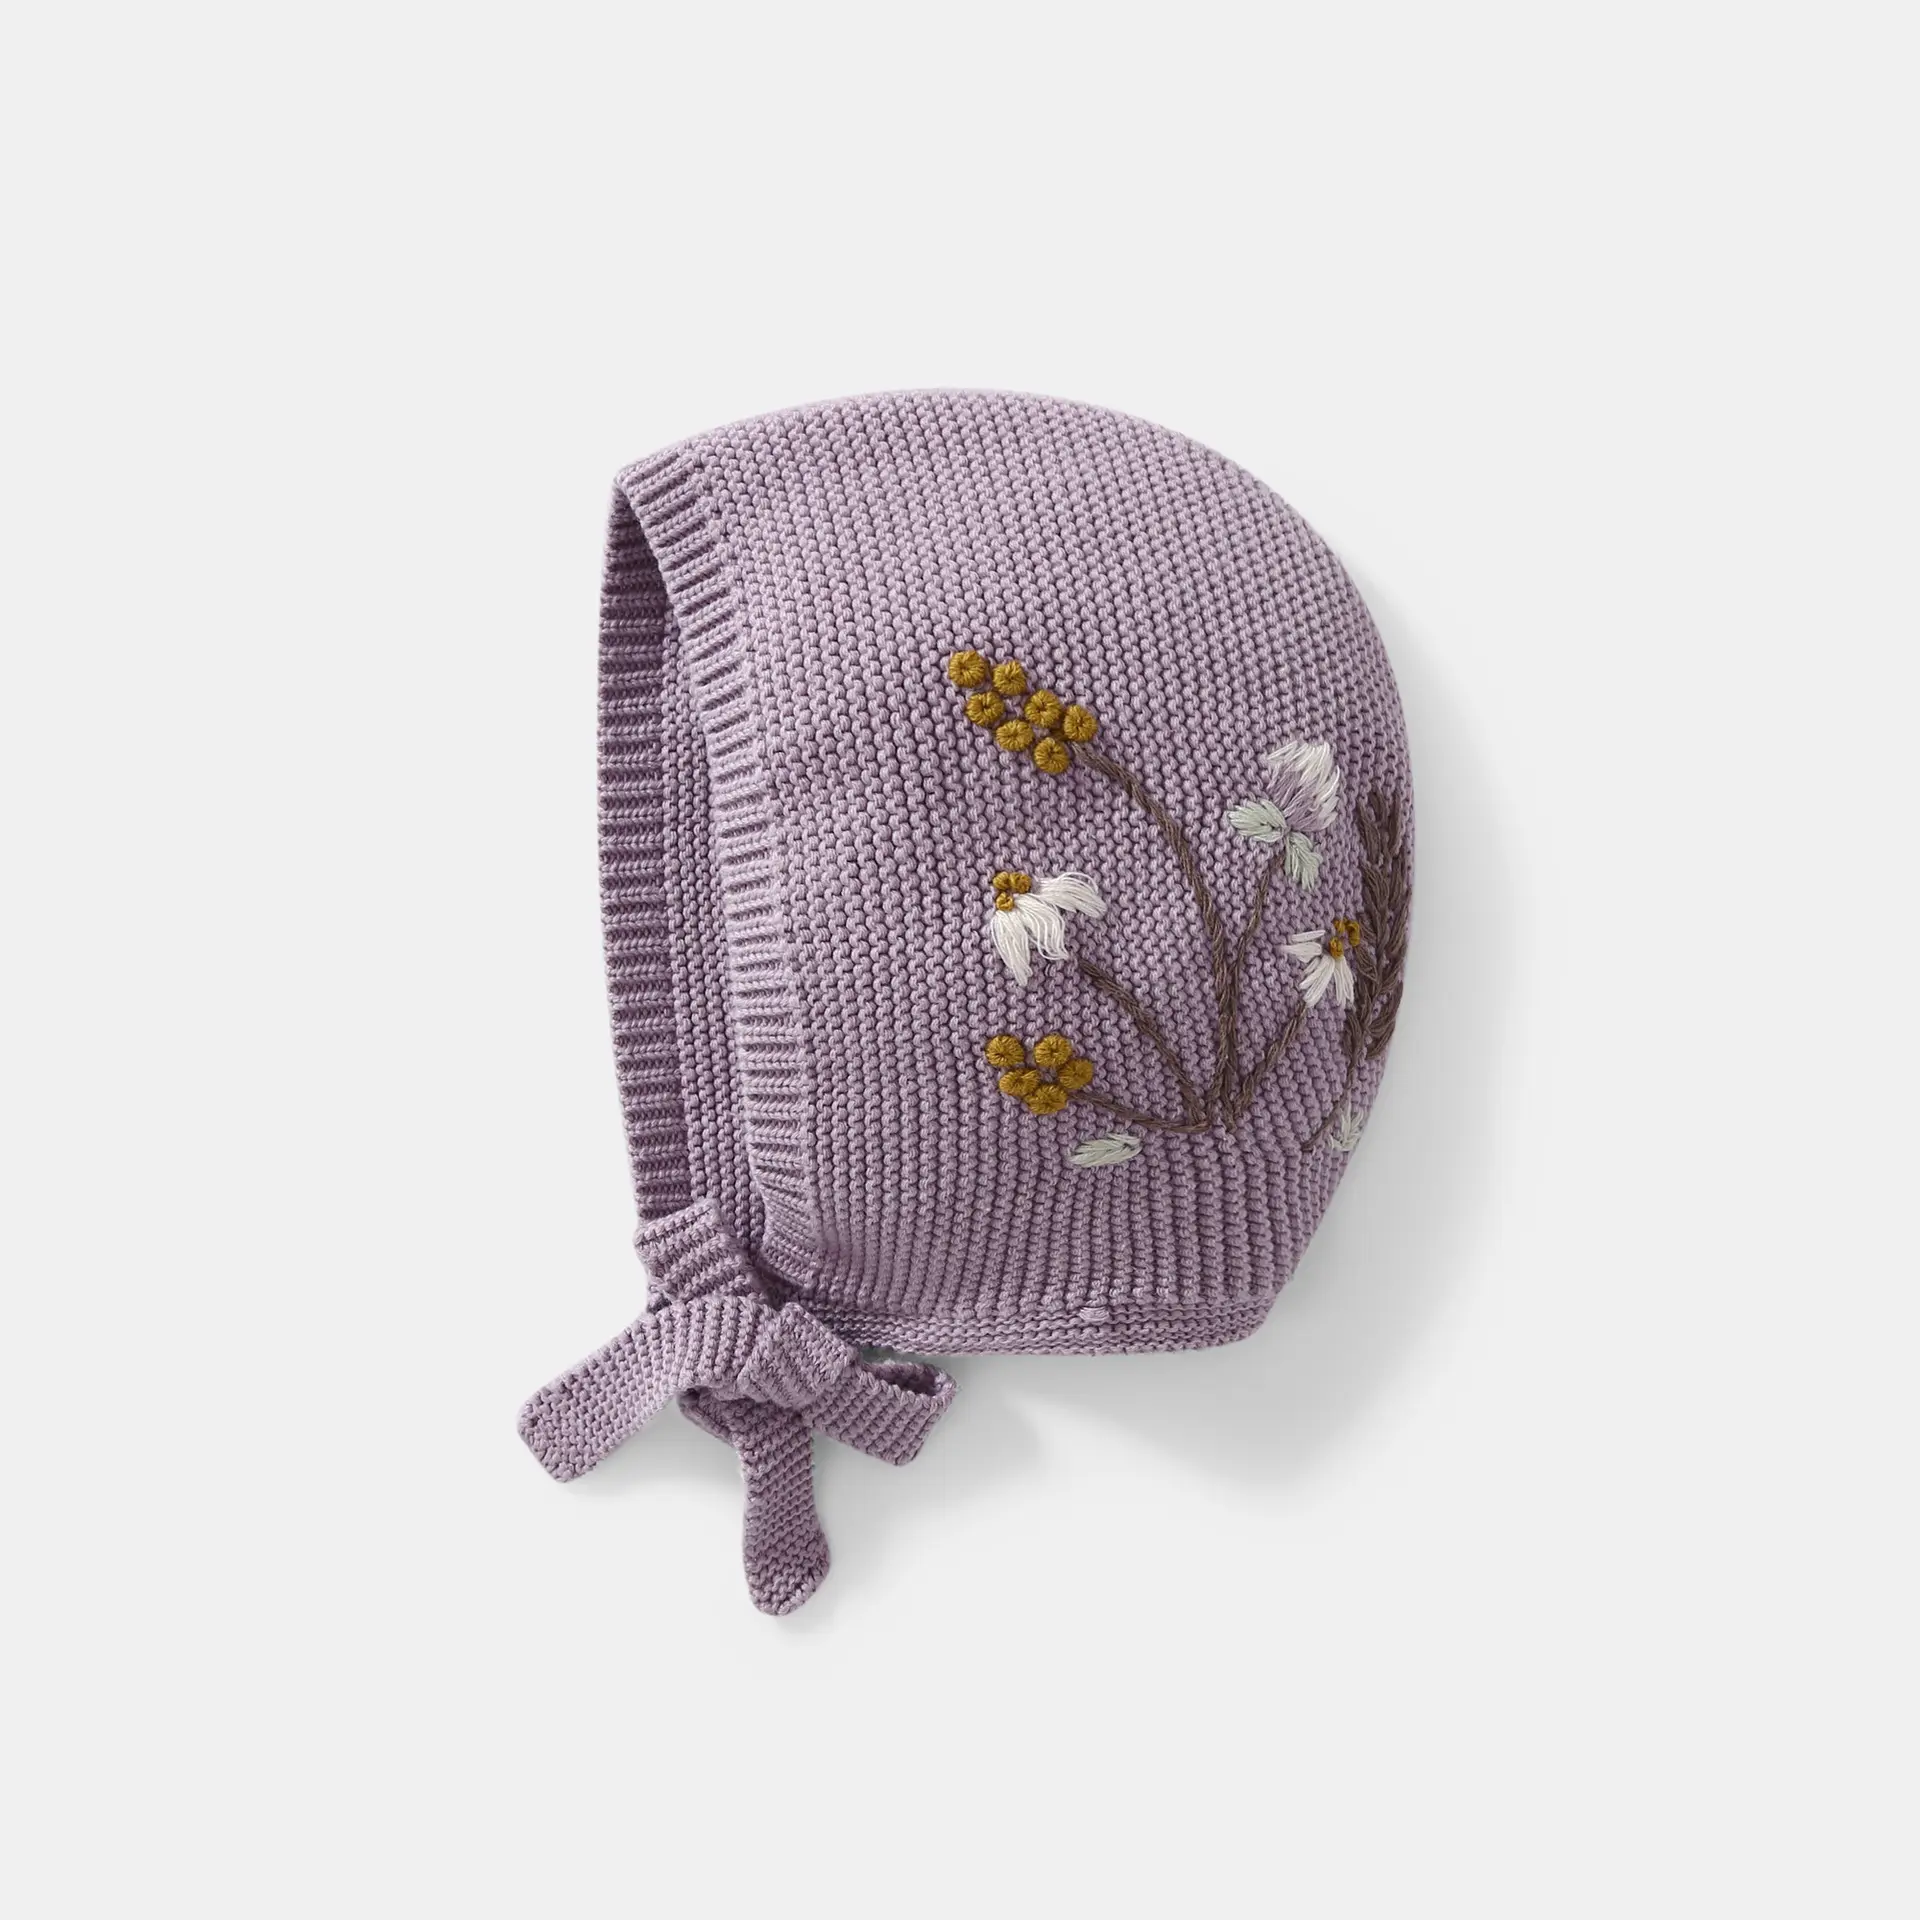 Topi rajut bayi perempuan, beanie tudung kepala bordir tangan, pelindung telinga anak perempuan, topi rajut berenda musim gugur dan musim dingin